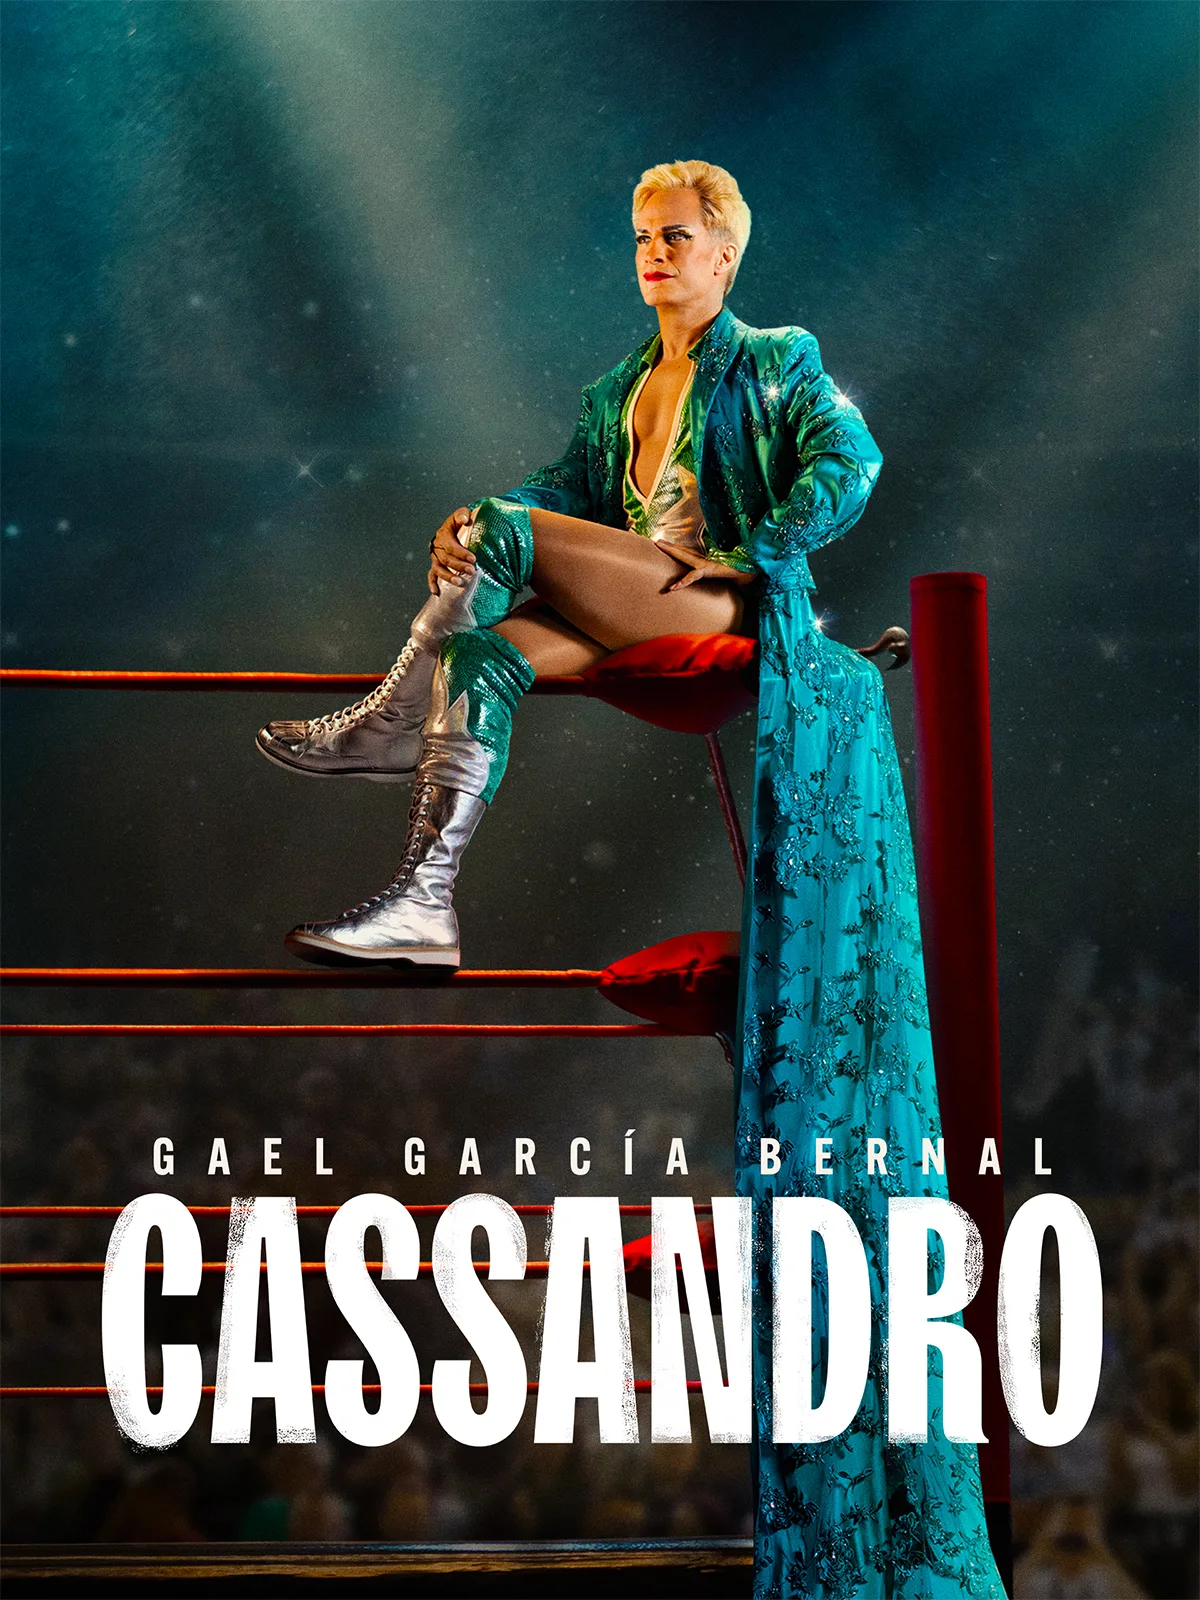 Gael García Bernal é lutador queer no trailer de "Cassandro"